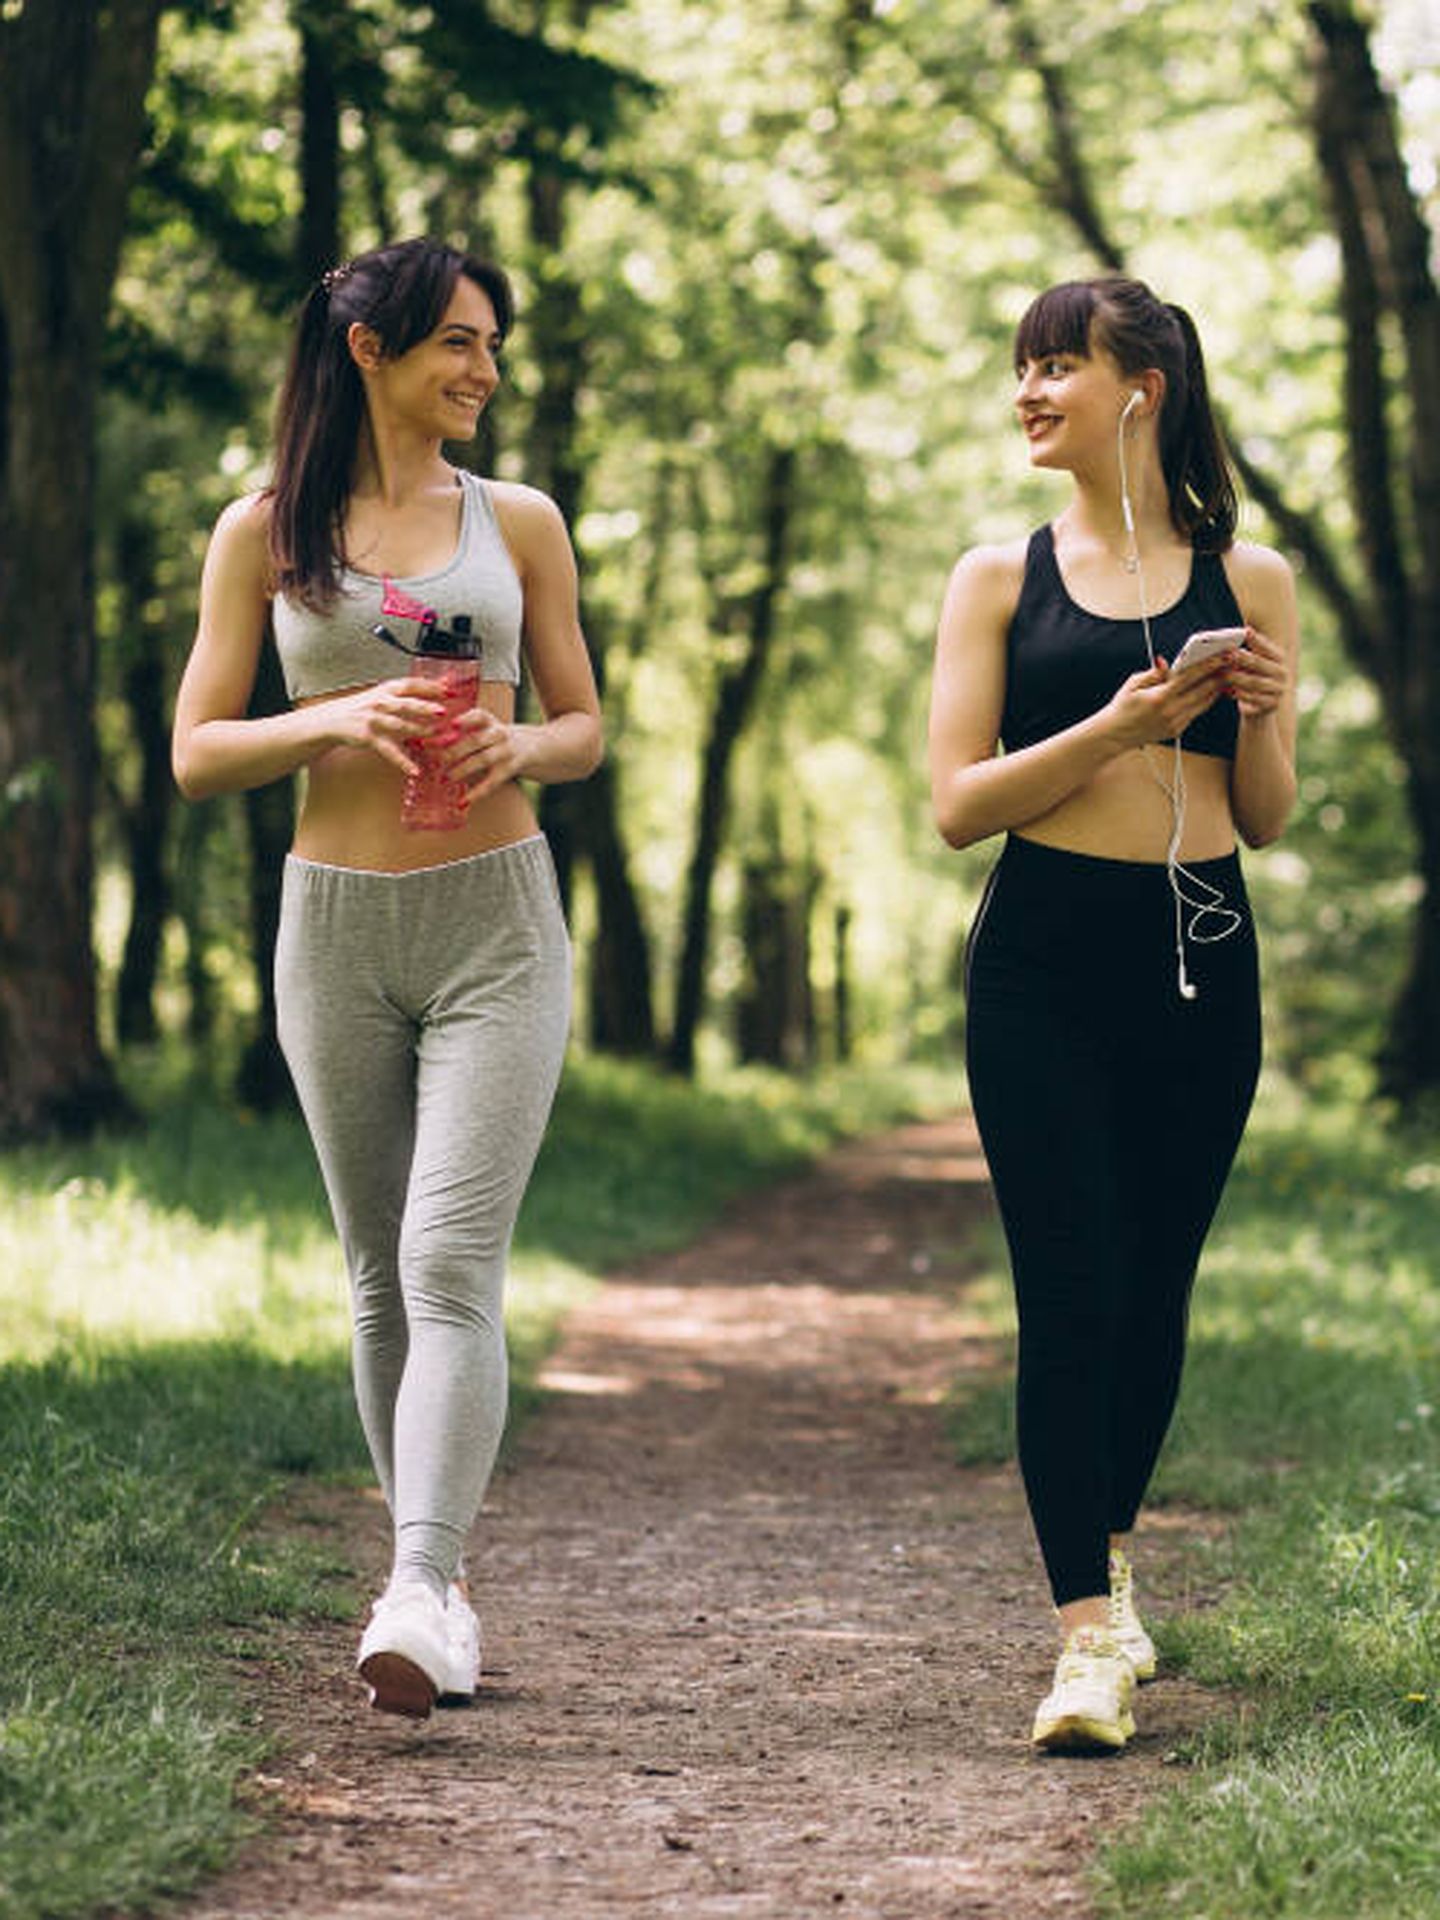 Puedes combinar el paseo a un ritmo rápido con la comba para complementar tu rutina de ejercicio.(Freepik)